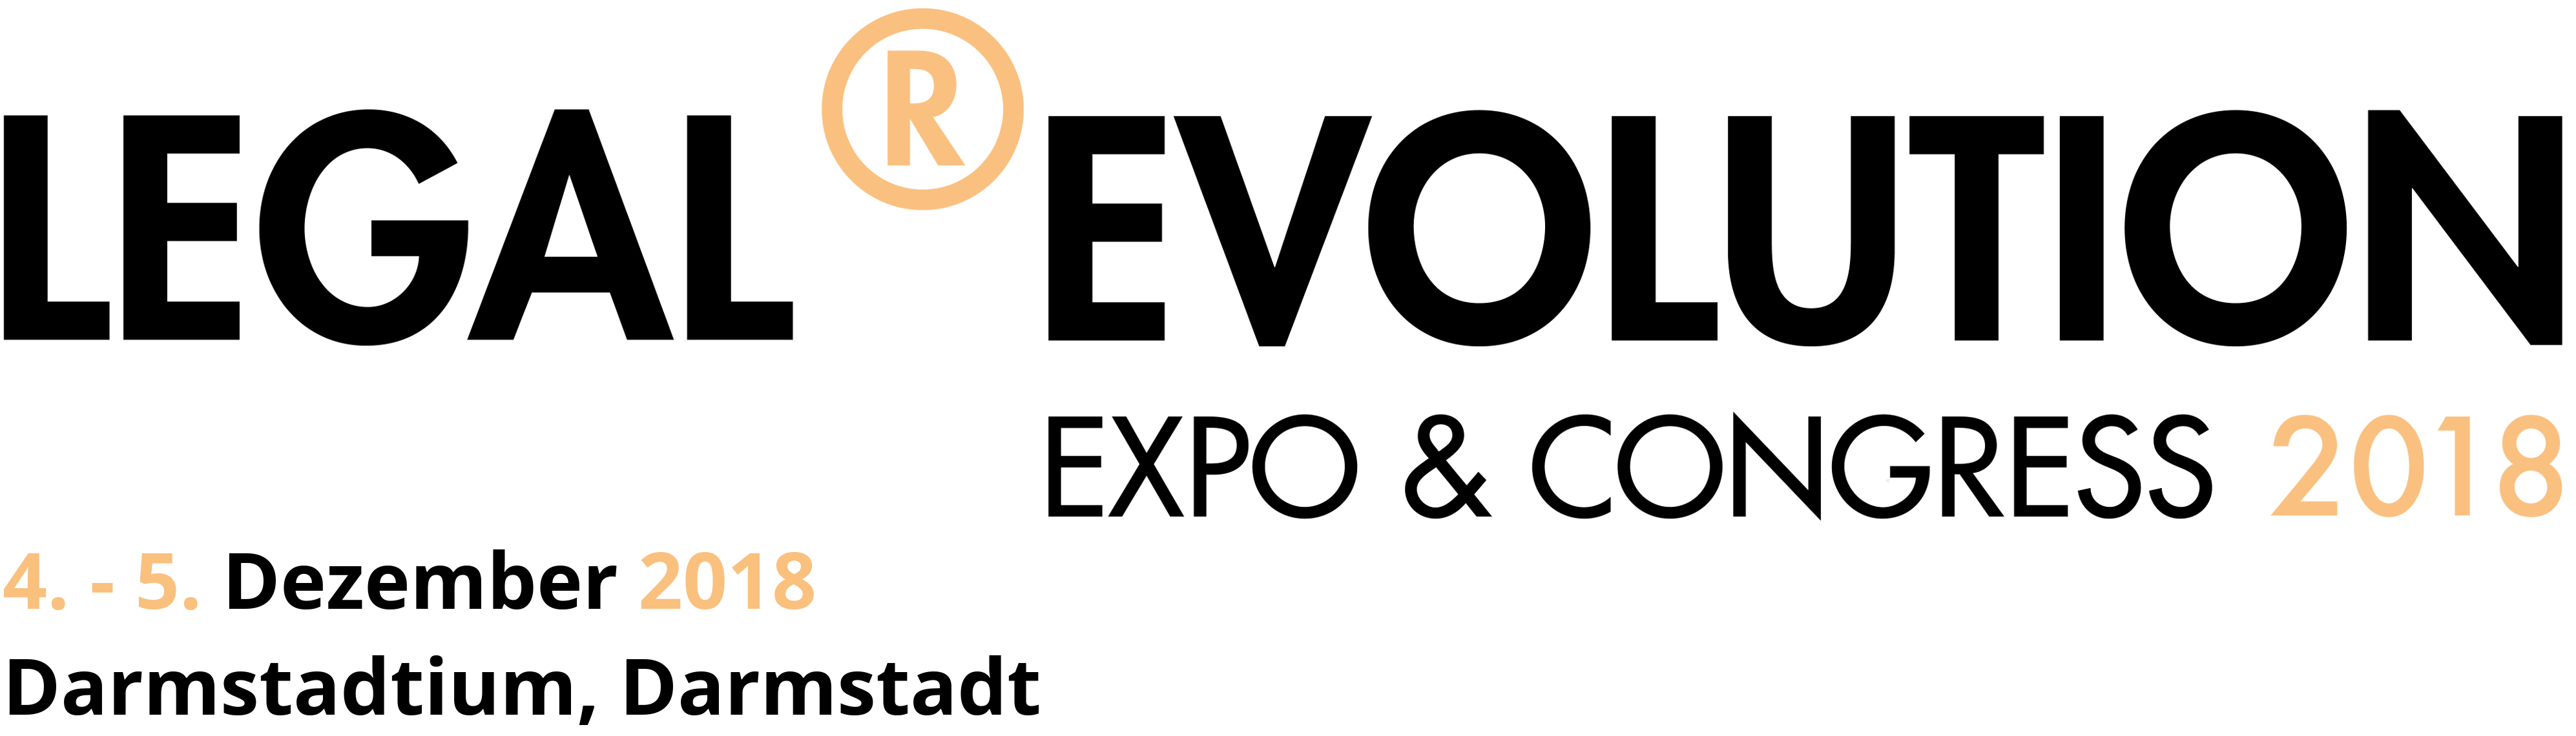 Logo mit datum und darmstadt